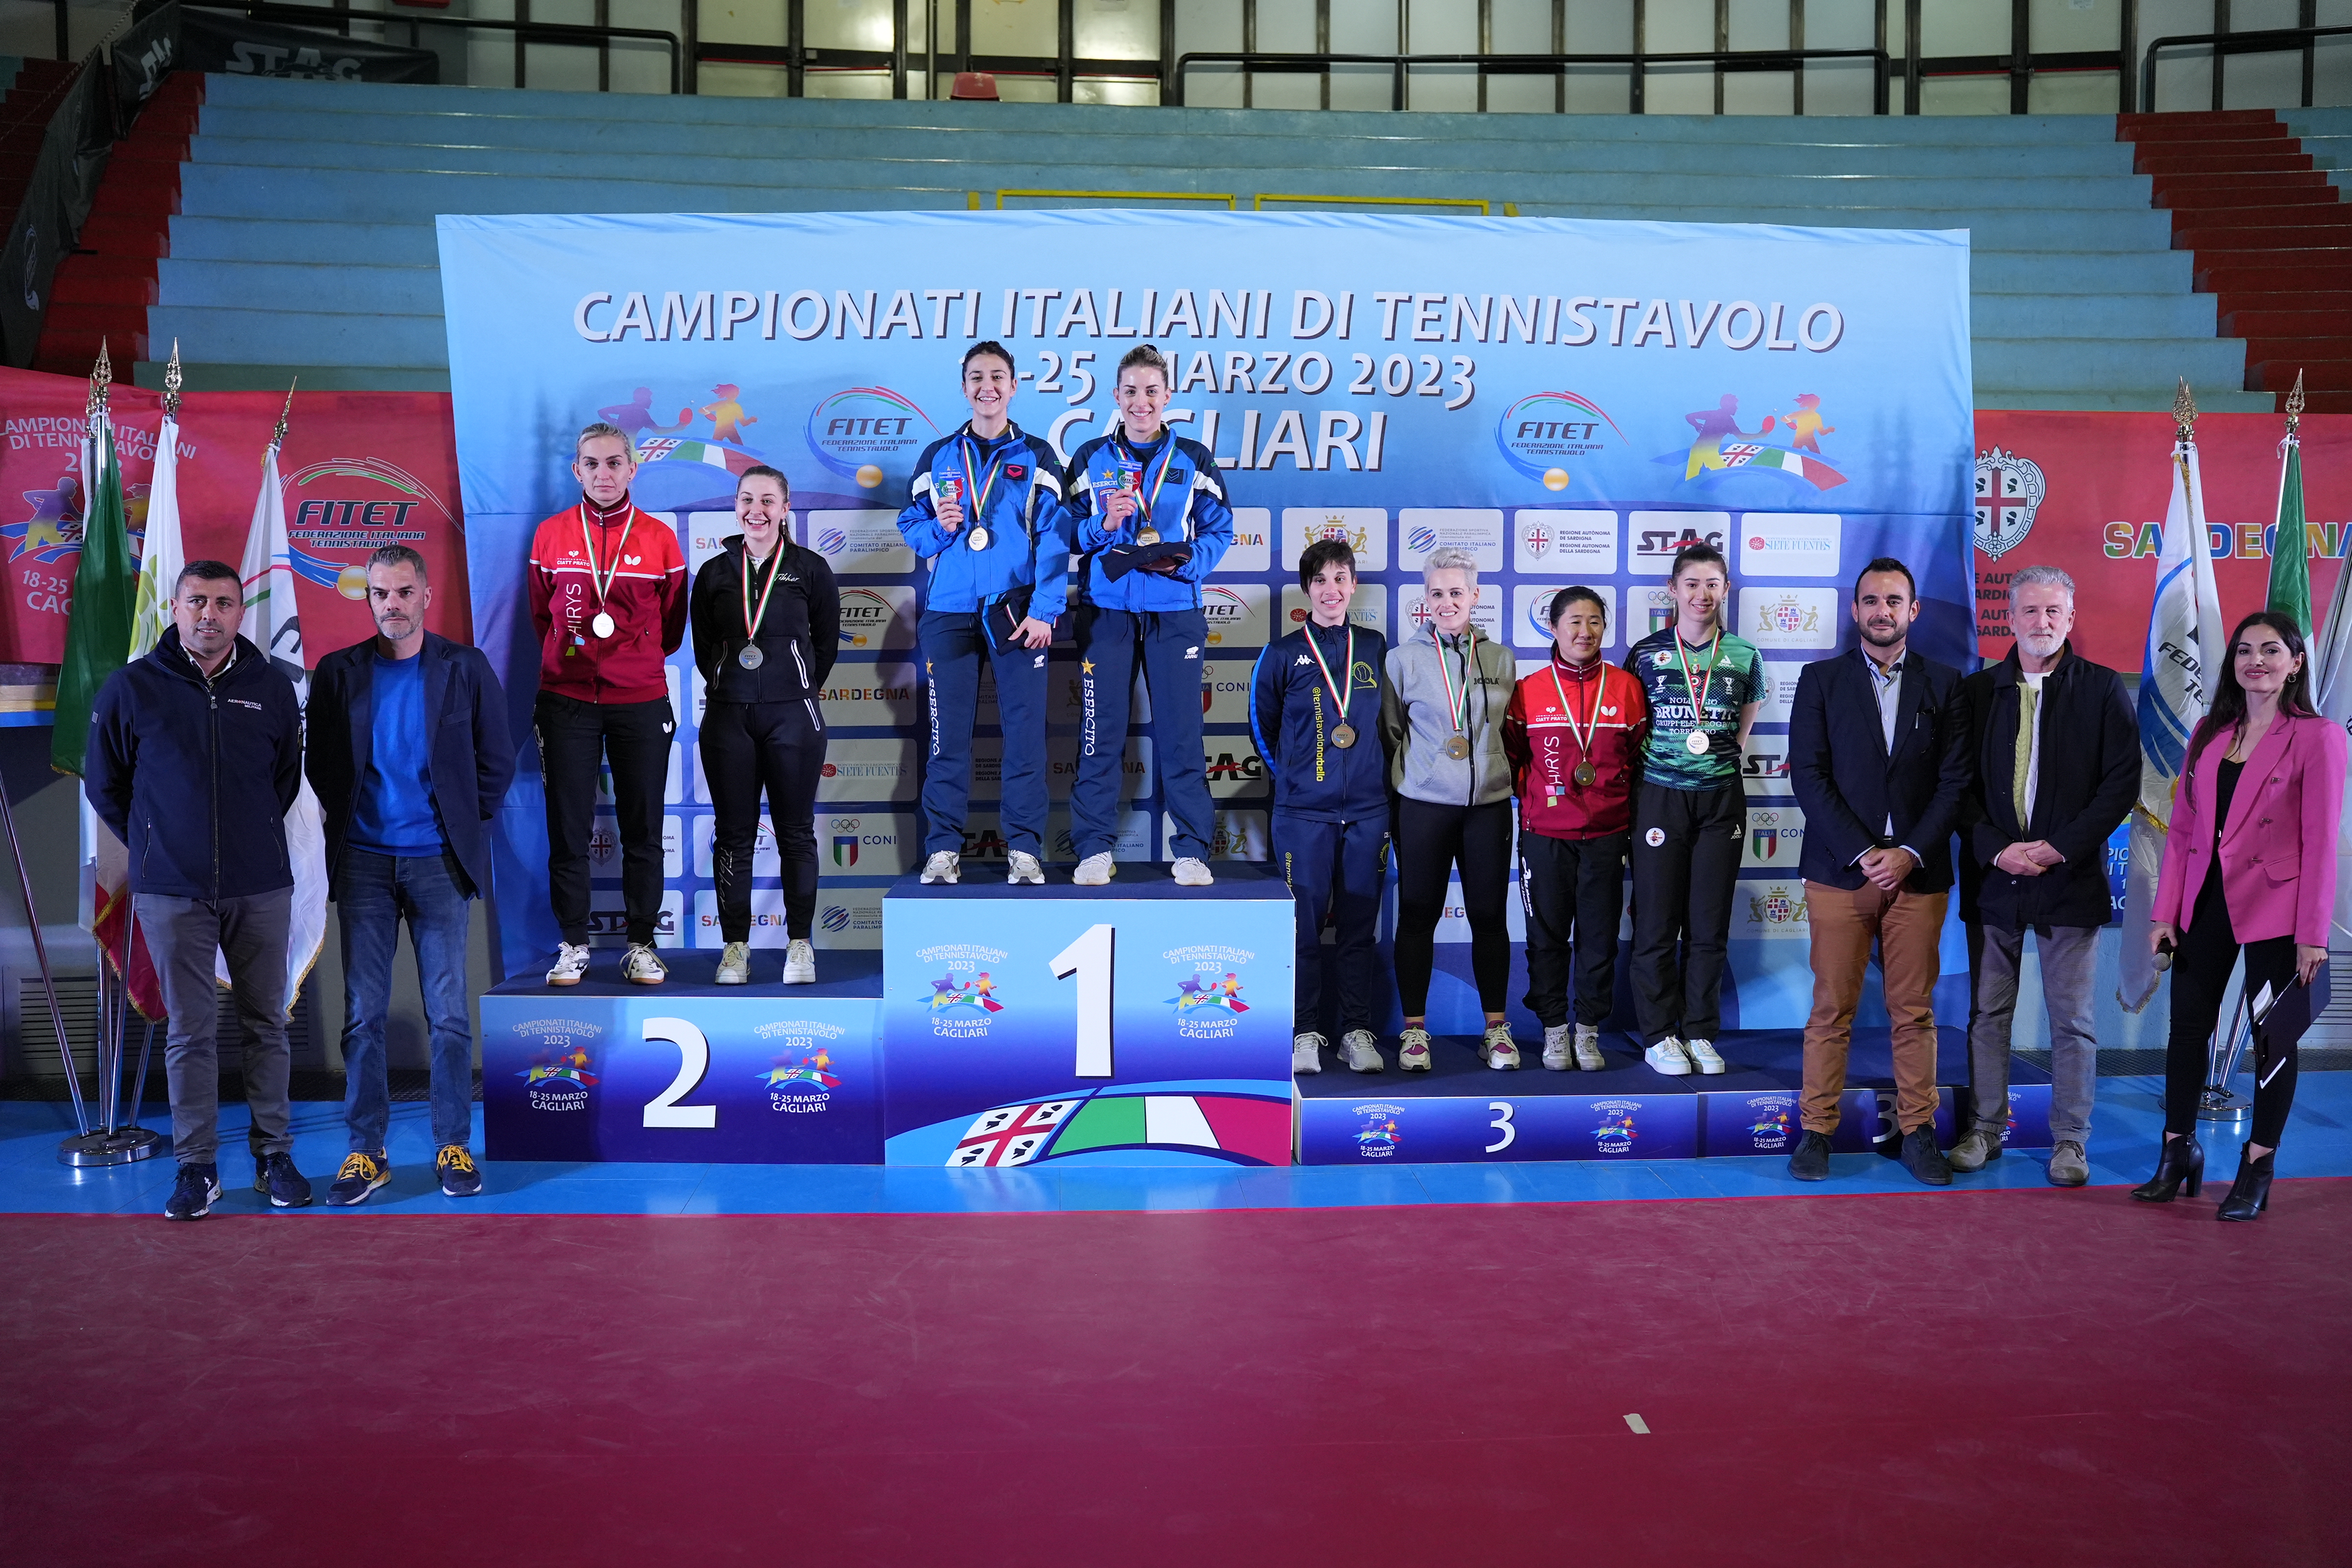 Campionati Italiani di Cagliari 2023 podio del doppio femminile assoluto